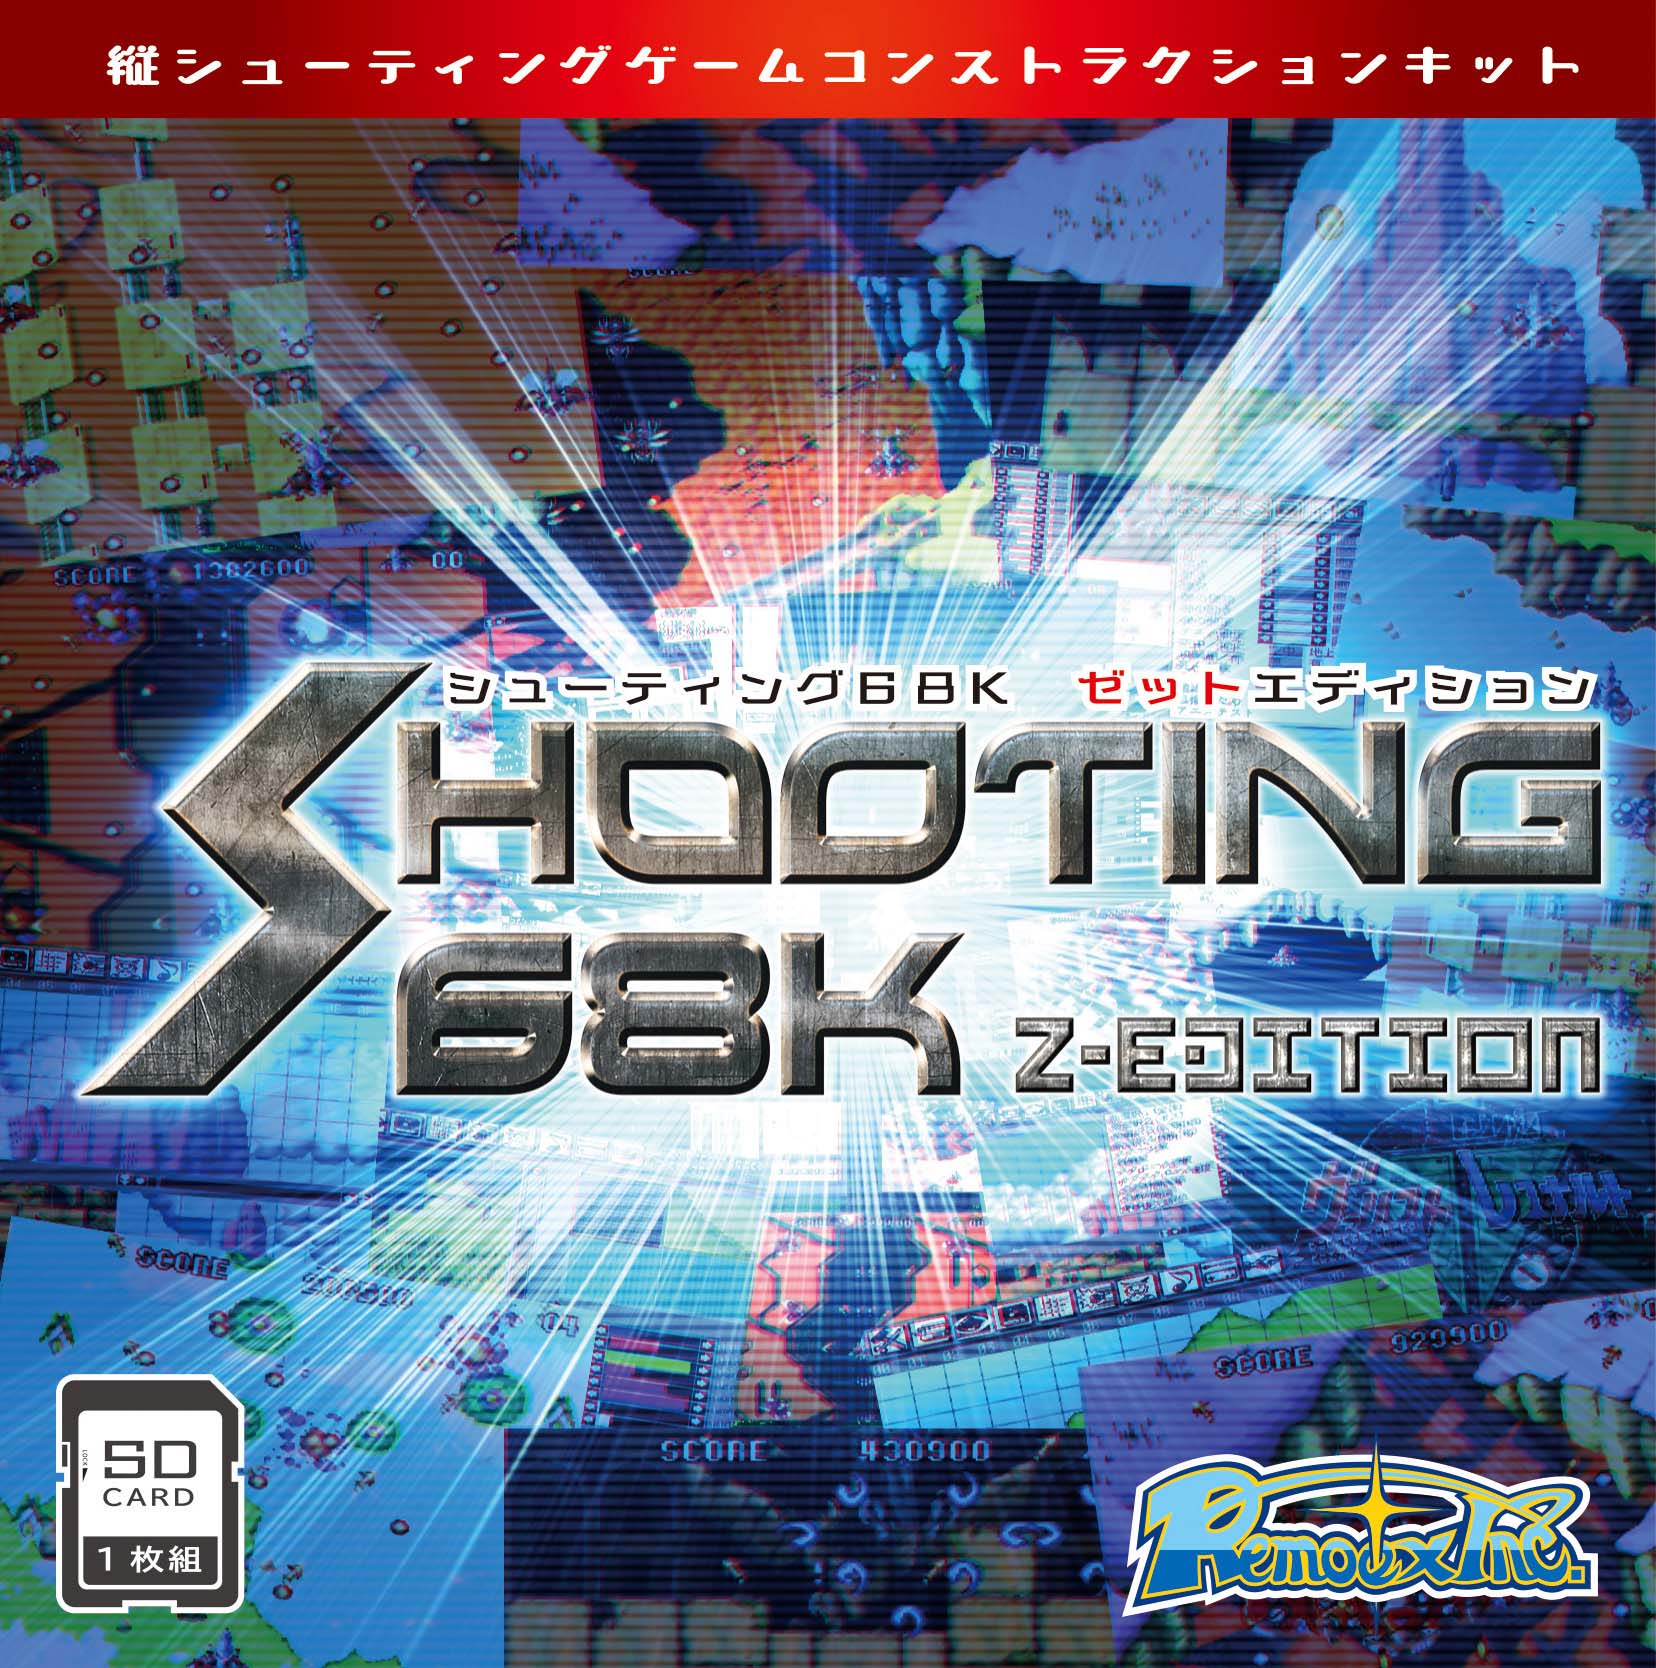 X68000 Z」向けコンストラクションソフト「SHOOTING68K Z-EDITION」の 